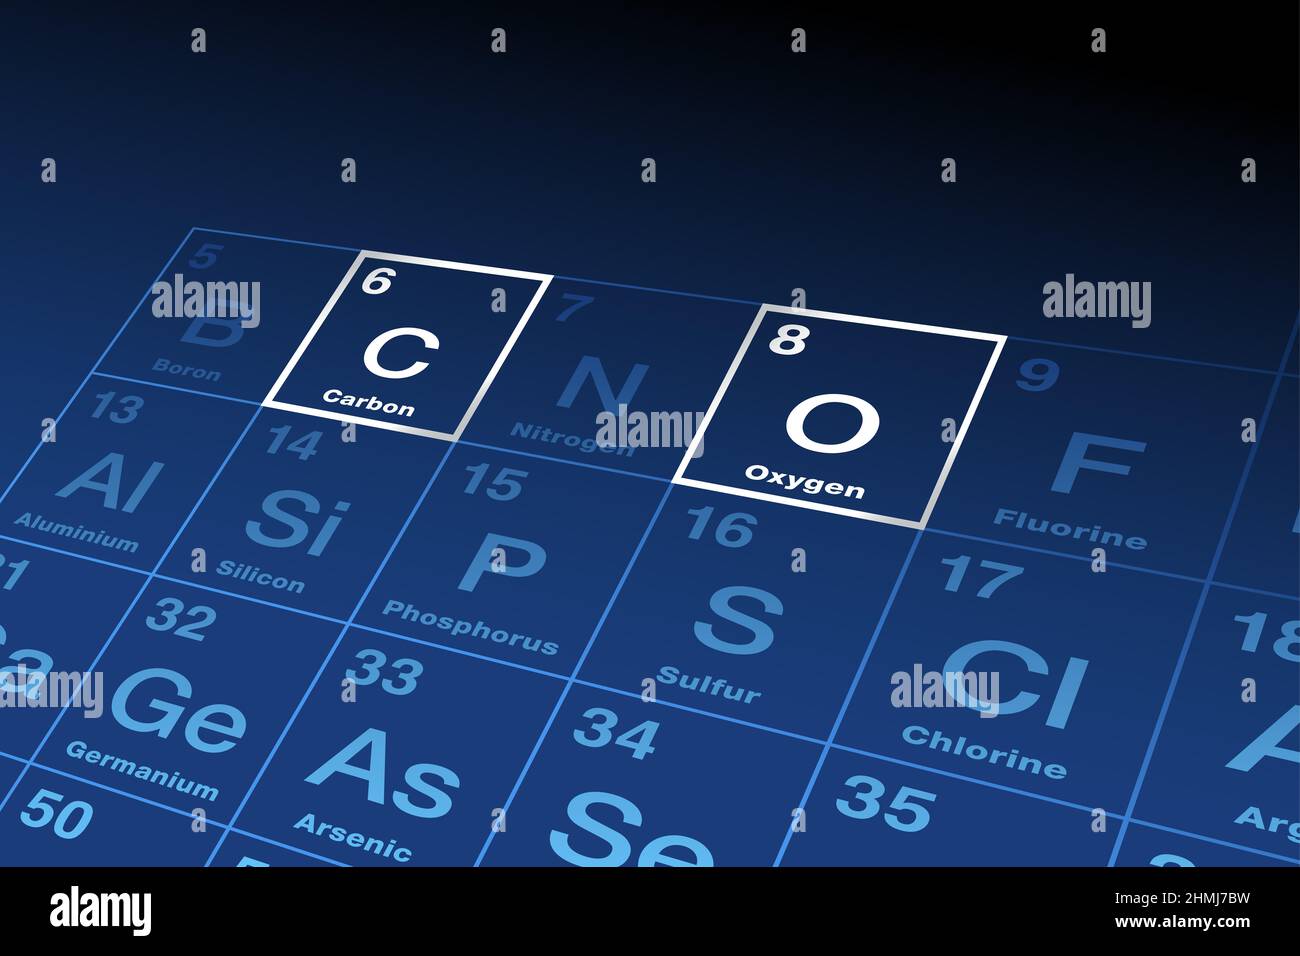 Kohlenstoff und Sauerstoff, chemische Elemente im Periodensystem der Elemente, mit den Elementsymbolen C und O sowie den Ordnungszahlen 6 und 8. Stockfoto